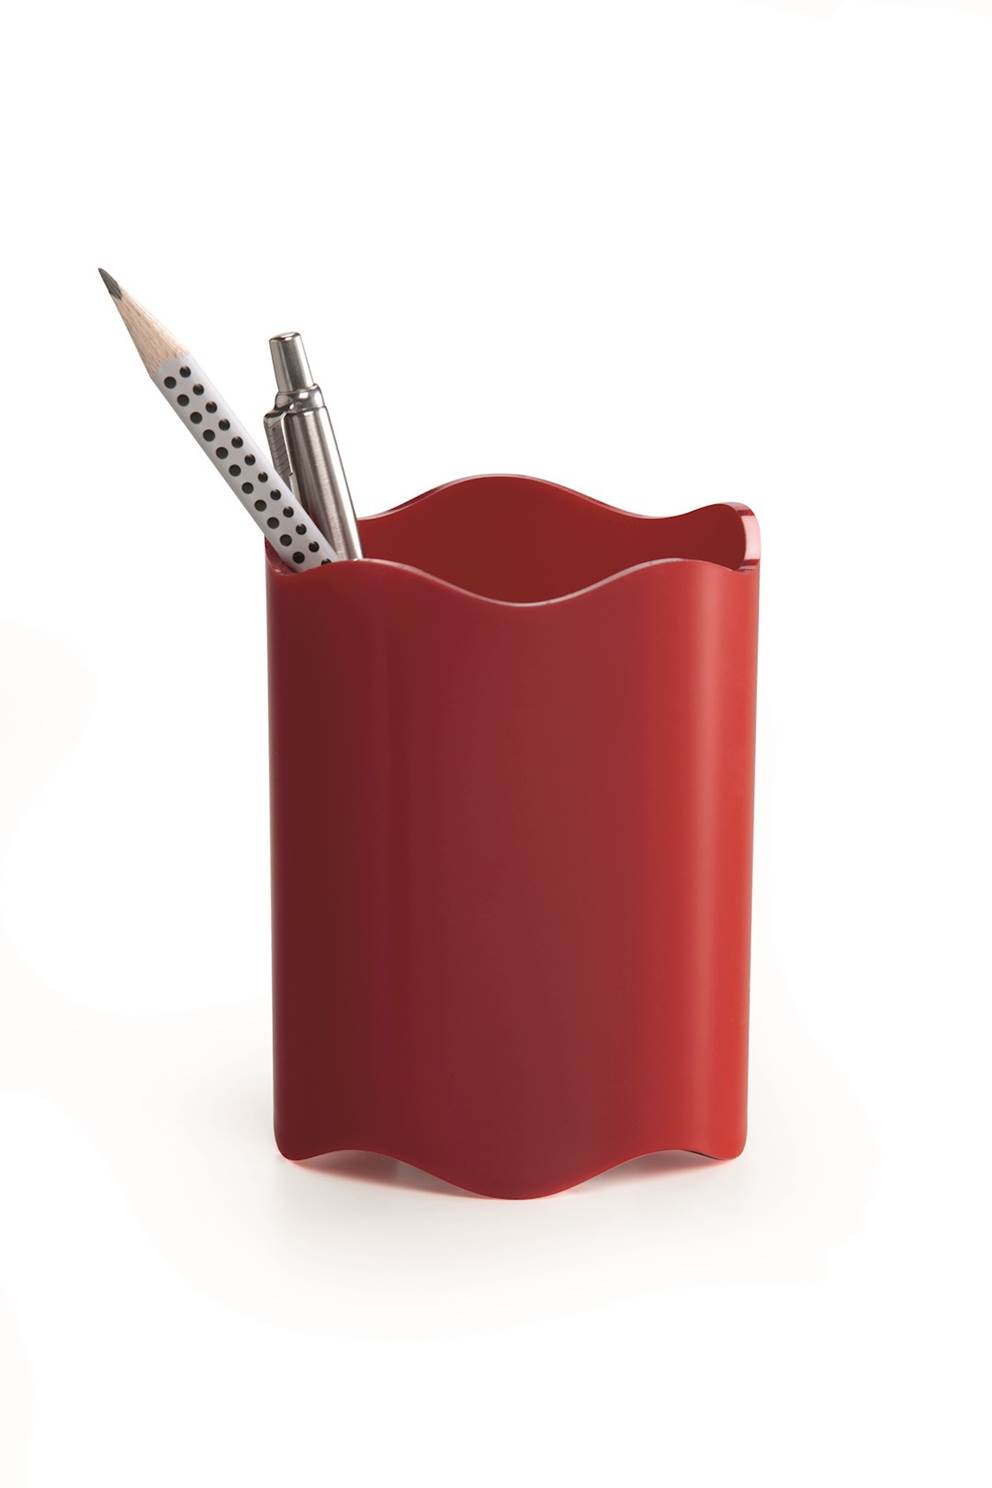 TREND pojemnik na długopisy czerwony